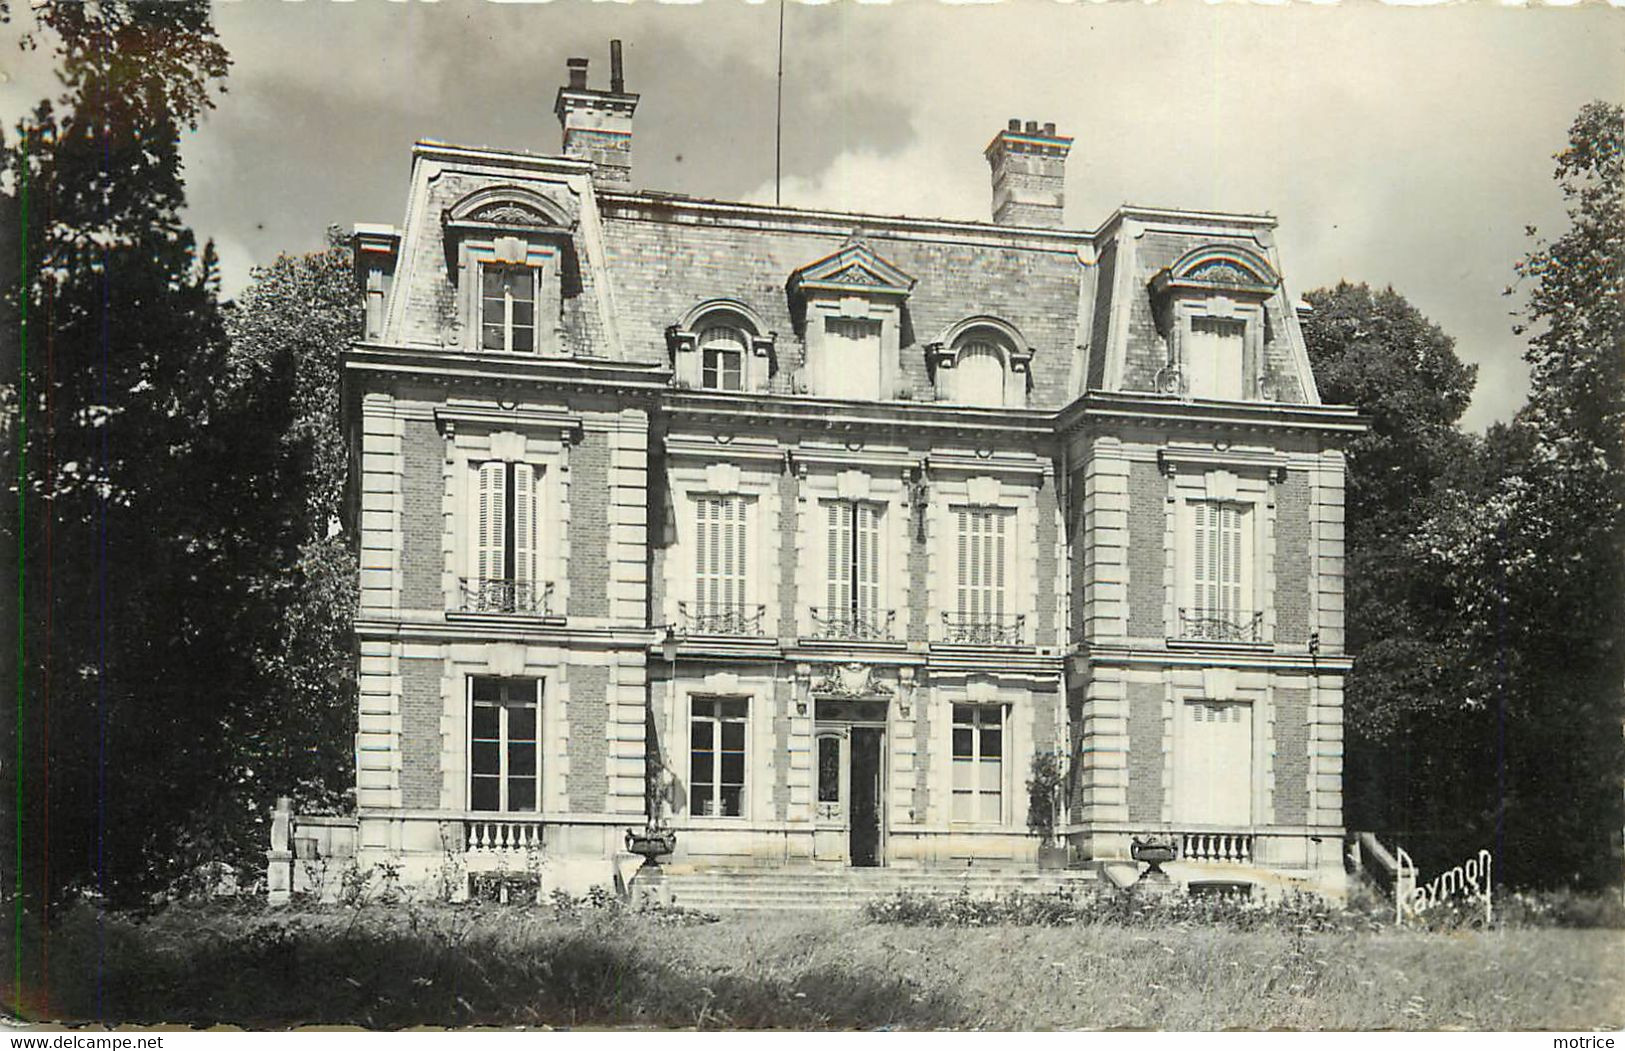 LOUVRES - Le Château. - Louvres